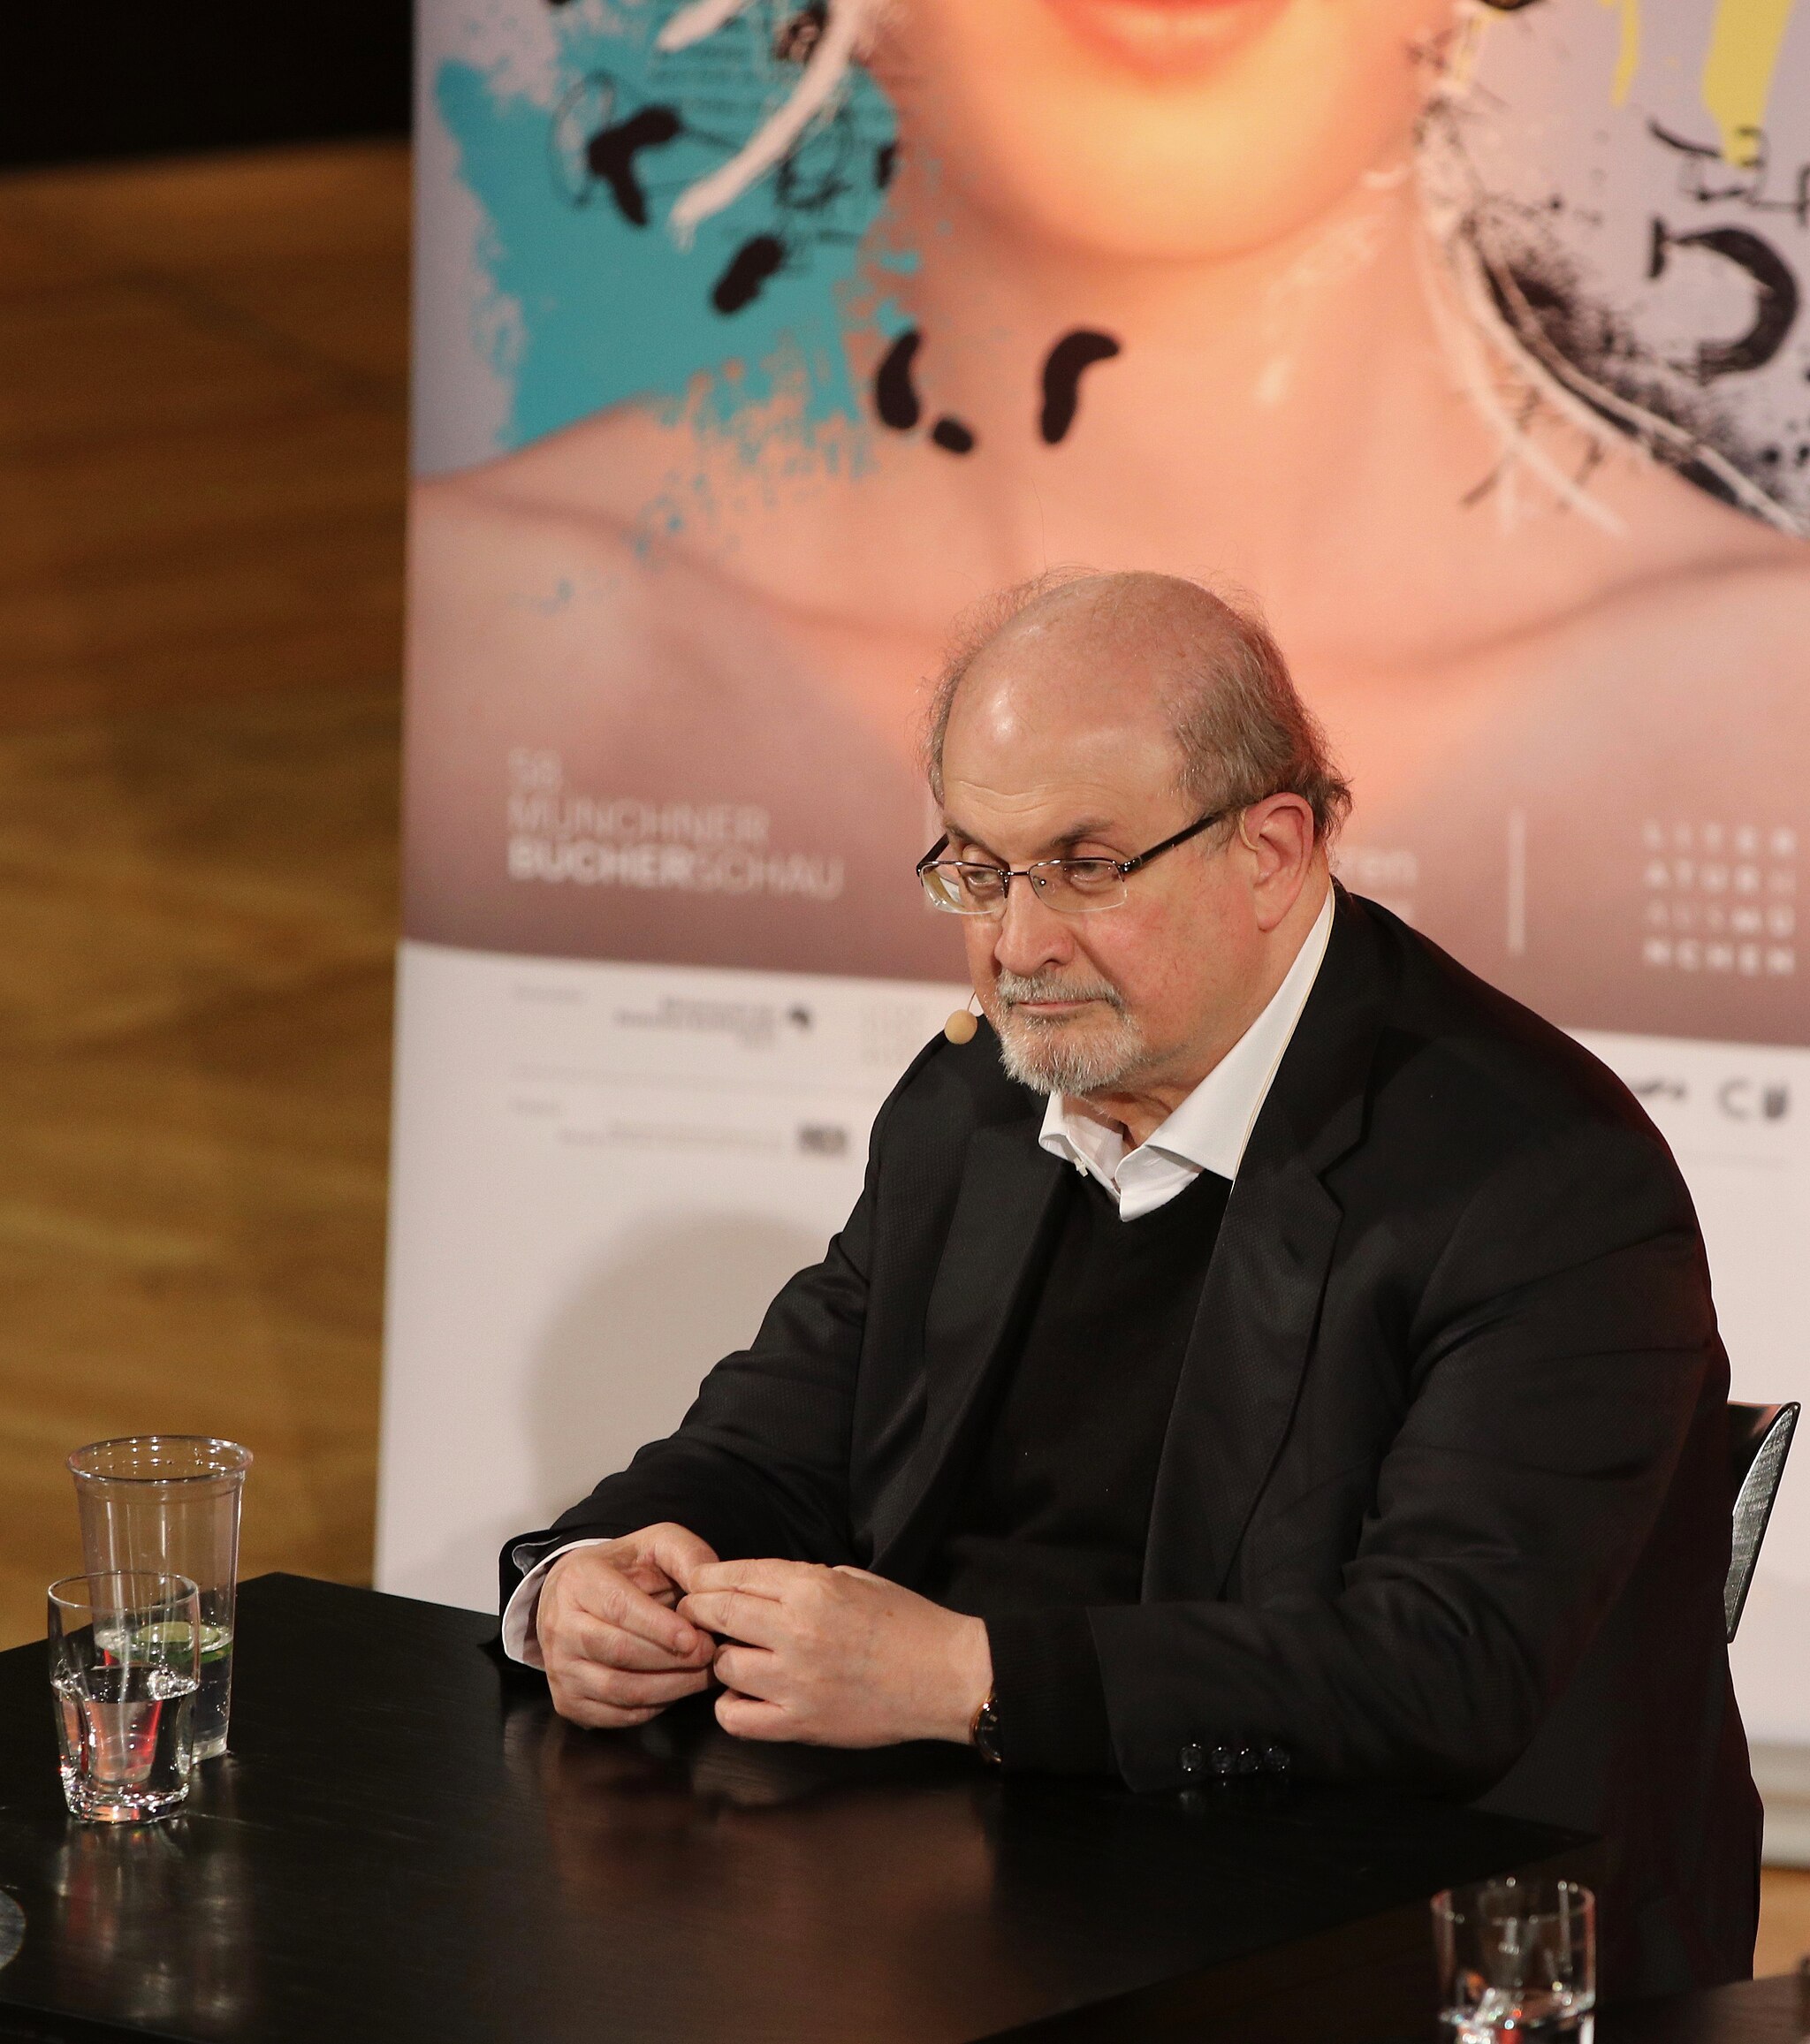 El escritor Salman Rushdie presentando su novela Casa Dorada en el Festival de Literatura de Munich 2017. Foto: Amrei-Marie/ CC BY-SA 4.0, via Wikimedia Commons.